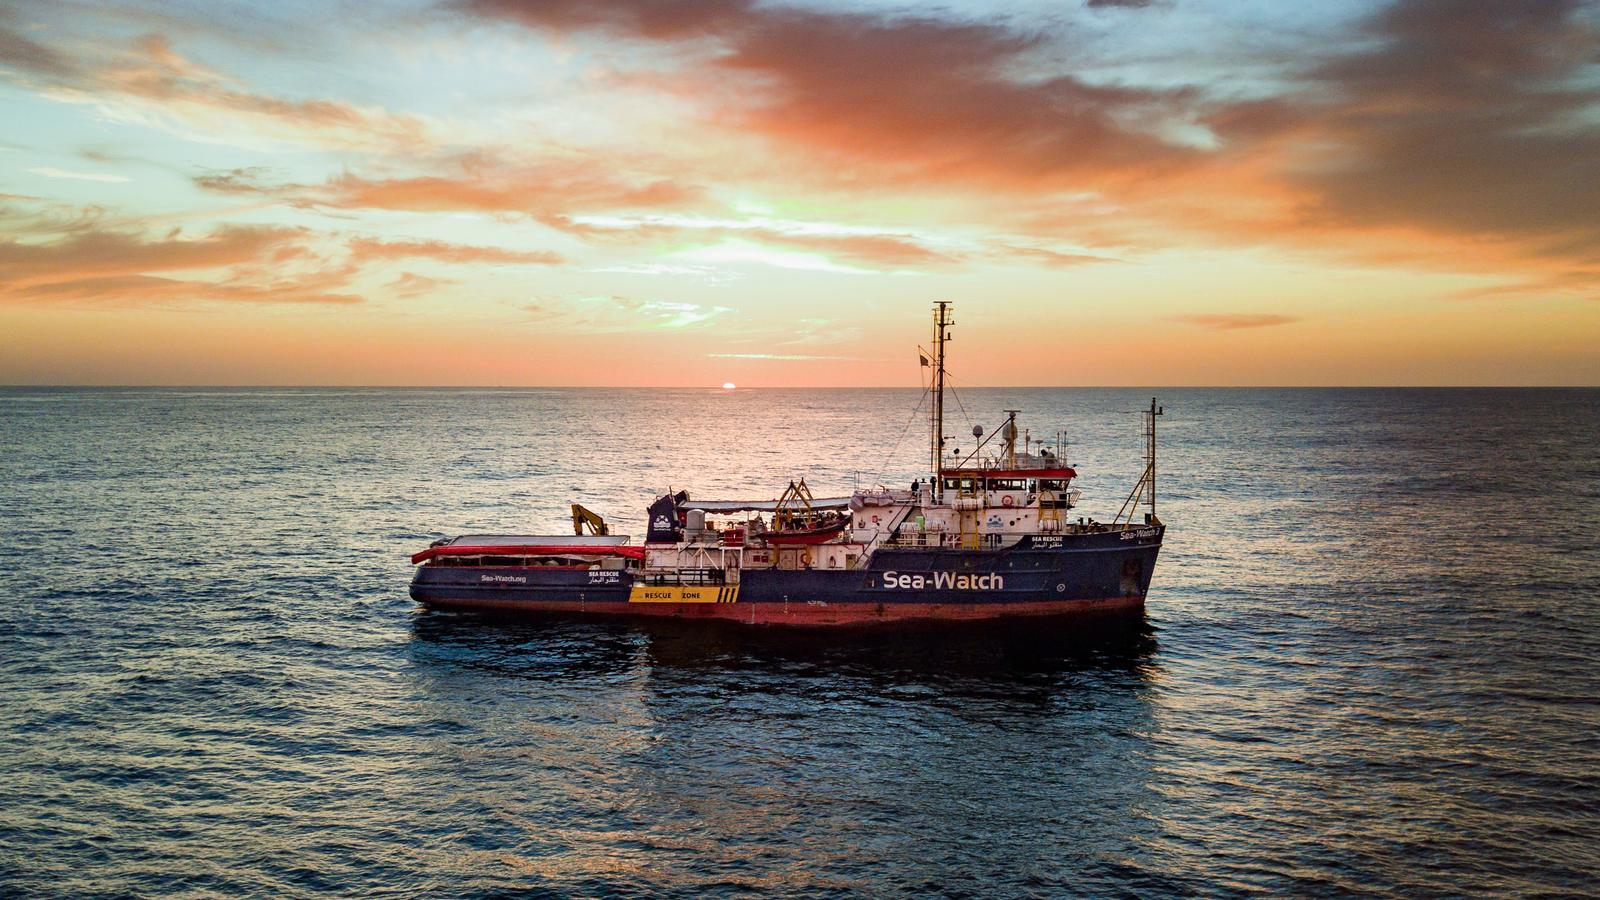 El vaixell Sea-Watch 3 té bandera holandesa. / Doug Kuntz / Sea-Watch